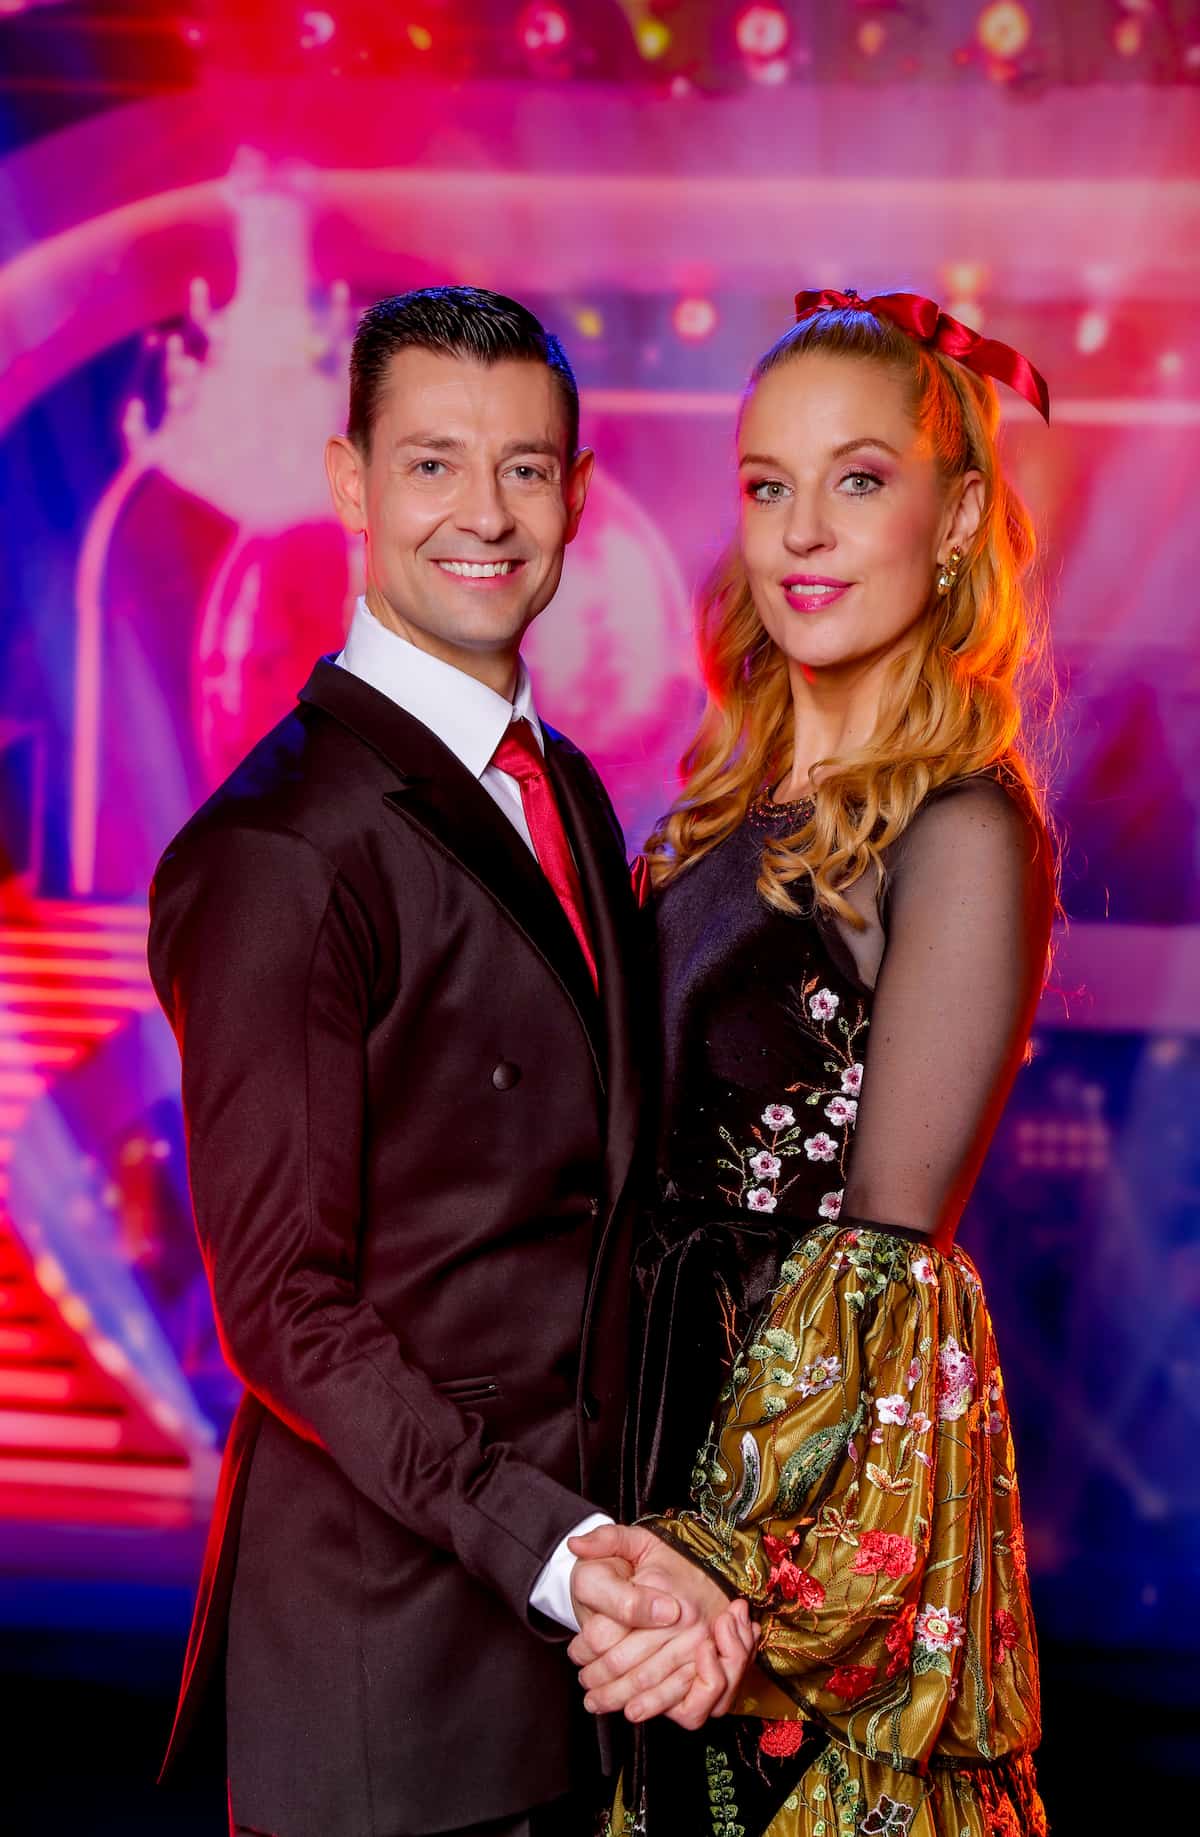 Tanz des Abends bei den Dancing Stars am 17.3.2023 - Lilian Klebow & Florian Gschaider mit einem Quickstep